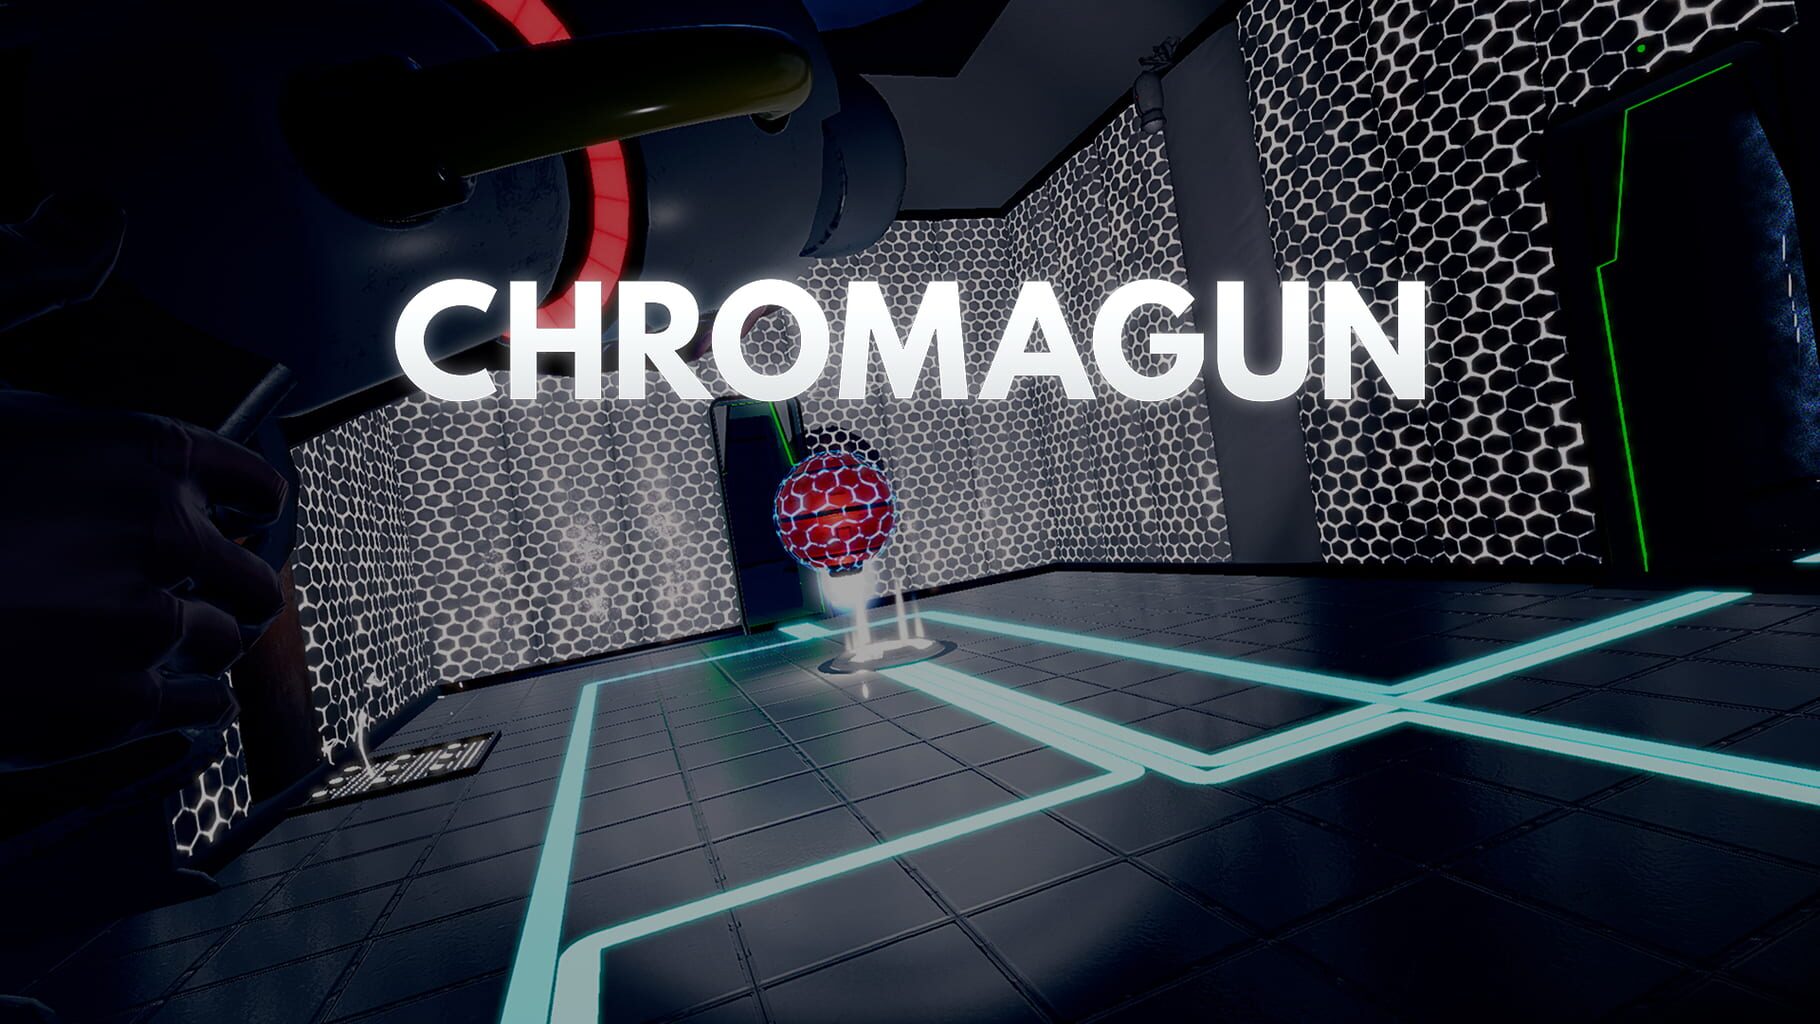 ChromaGun artwork